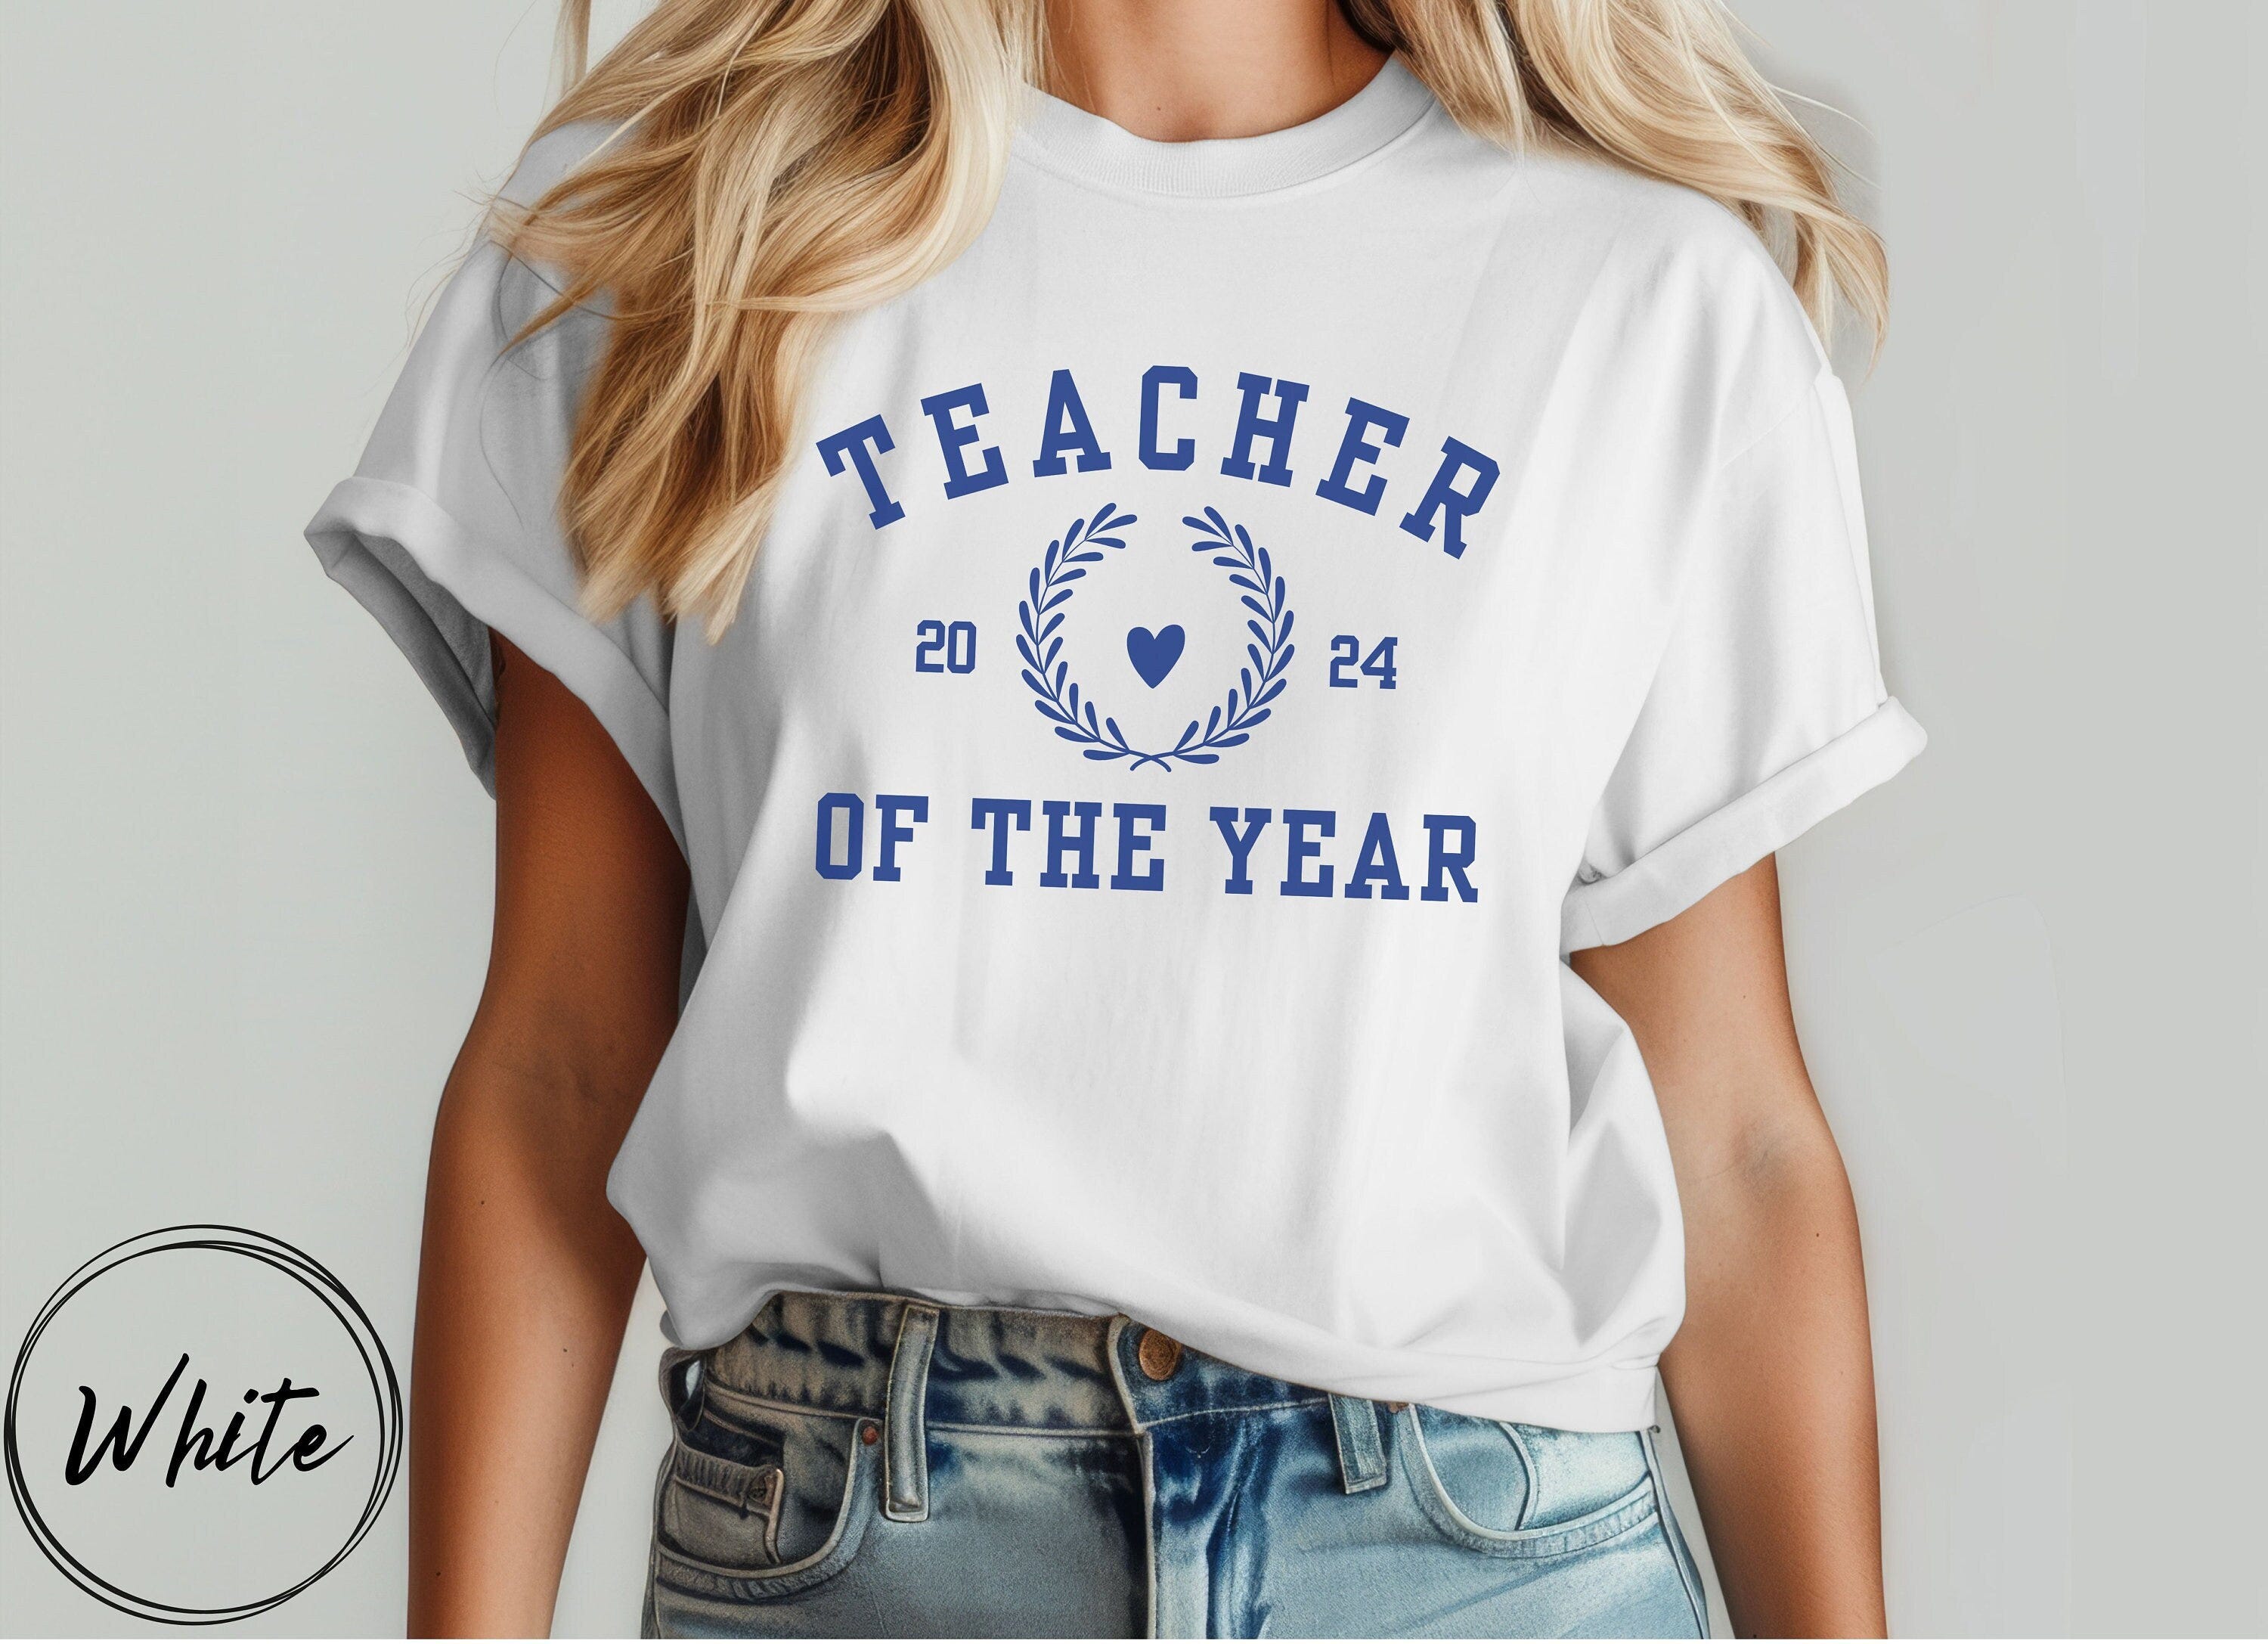 Teacher Appreciation Gift, Teacher of the Year Sweatshirt, Gift for Teacher, Teaching Gift, College Letters, Teacher Shirt